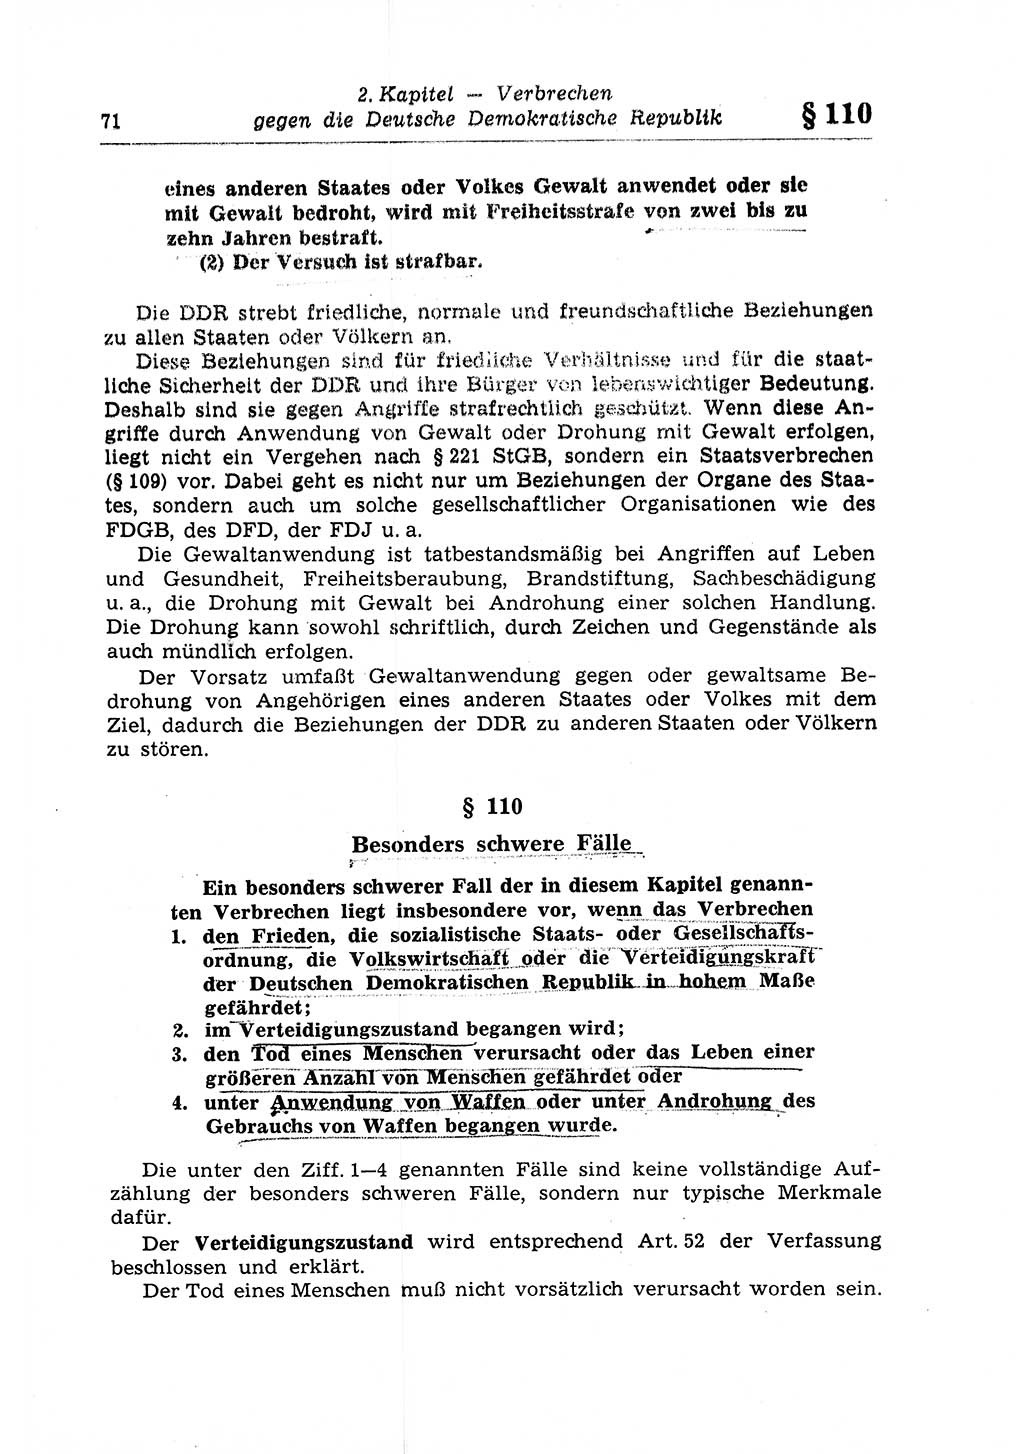 Strafrecht der Deutschen Demokratischen Republik (DDR), Lehrkommentar zum Strafgesetzbuch (StGB), Besonderer Teil 1970, Seite 71 (Strafr. DDR Lehrkomm. StGB BT 1970, S. 71)